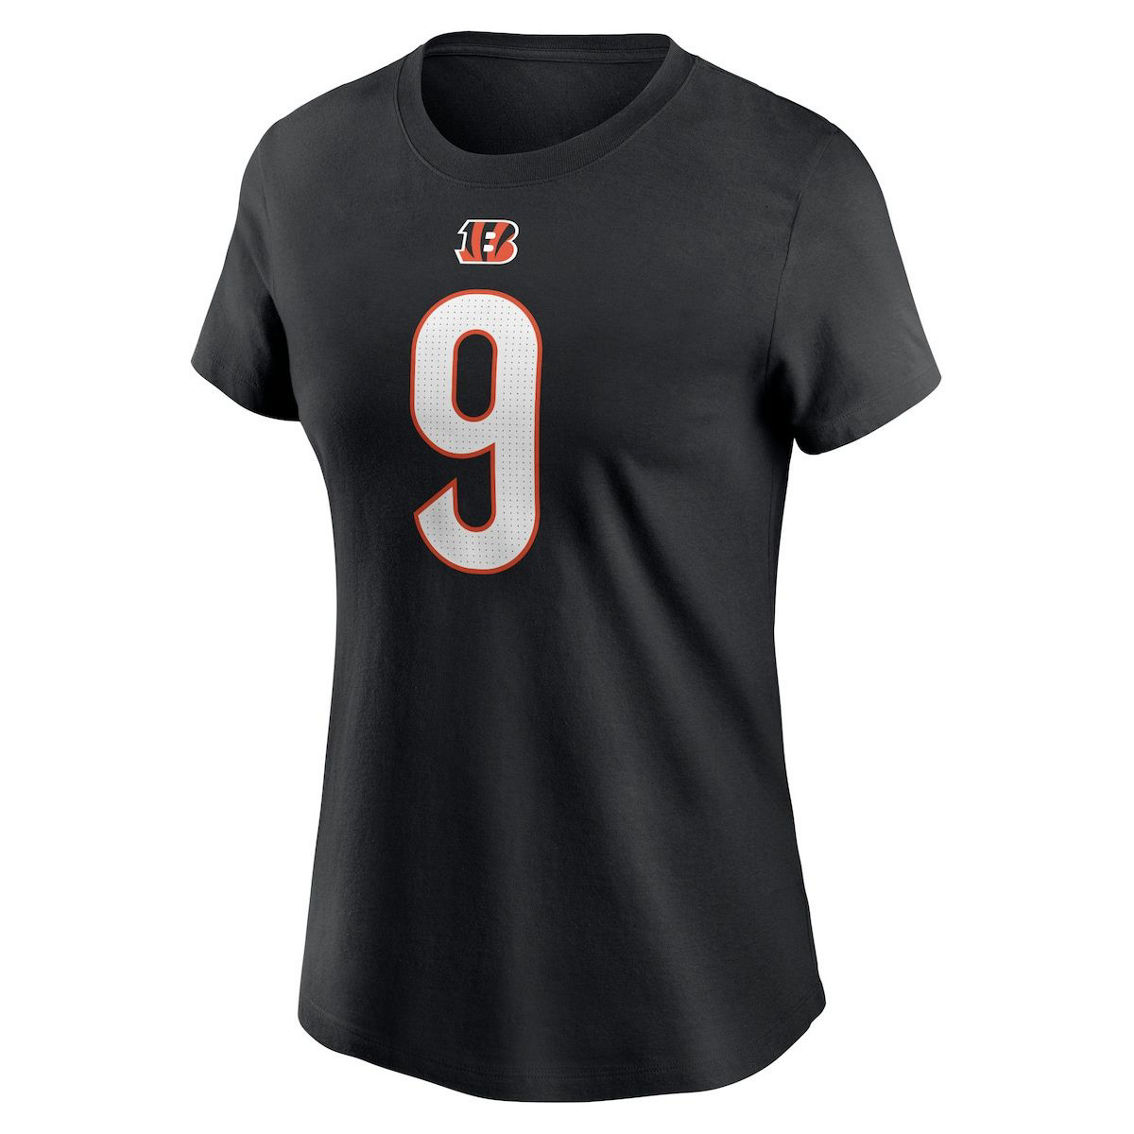 Nike Women's Joe Burrow Black Cincinnati Bengals Player Name & Number T-Shirt - Image 3 of 4